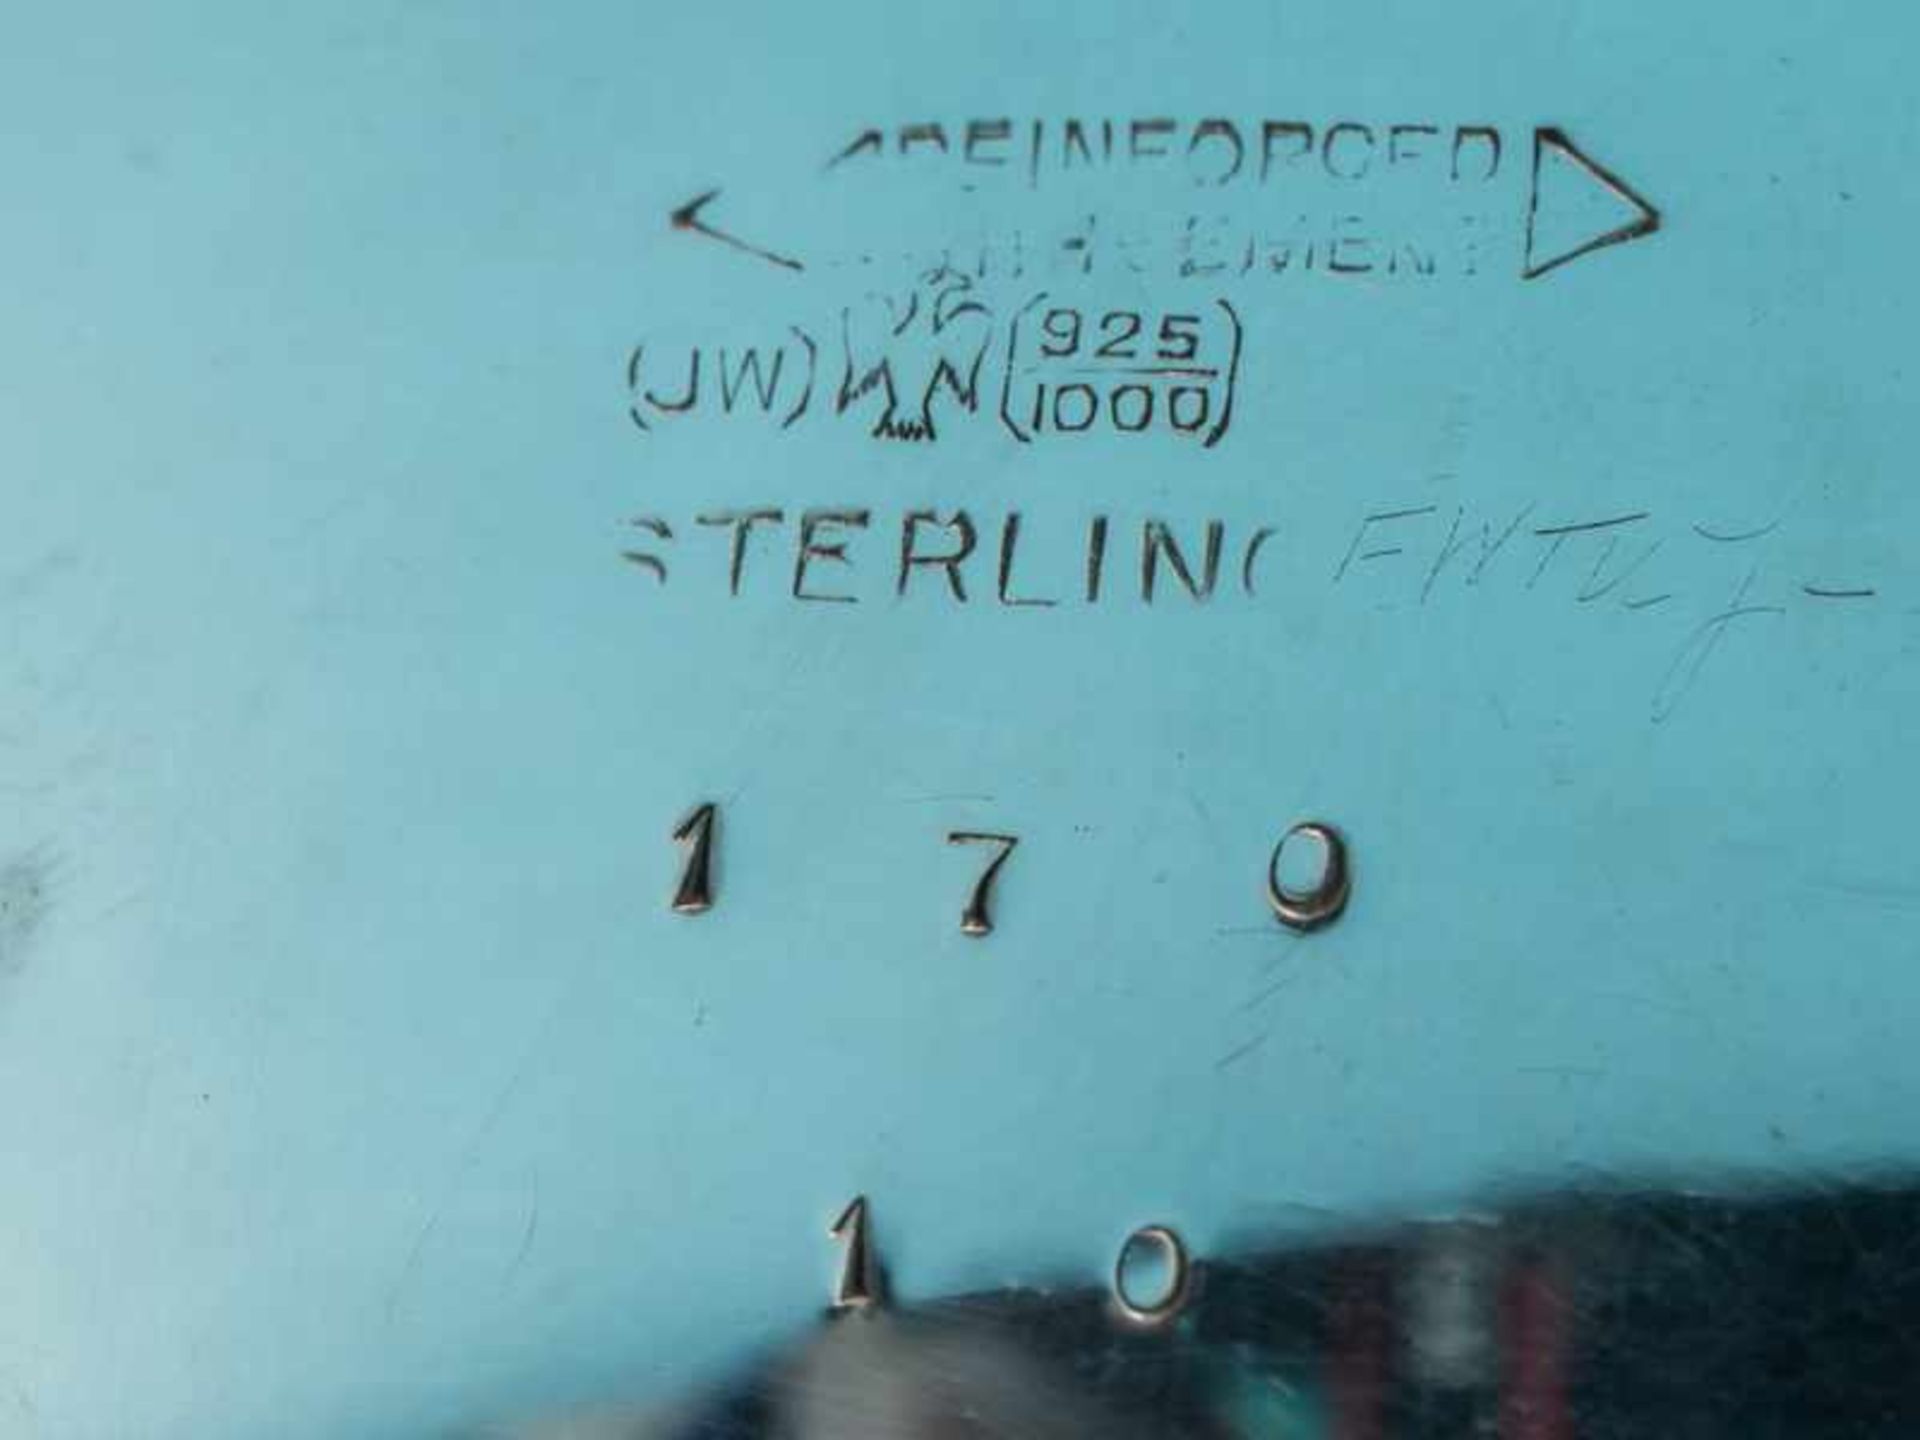 Leuchter-Paar und 2 Einzel-Leuchter, USA, 20. Jh. 925/-Silber (gewichtet), Gesamtgewicht ca. 1521 g; - Image 3 of 5